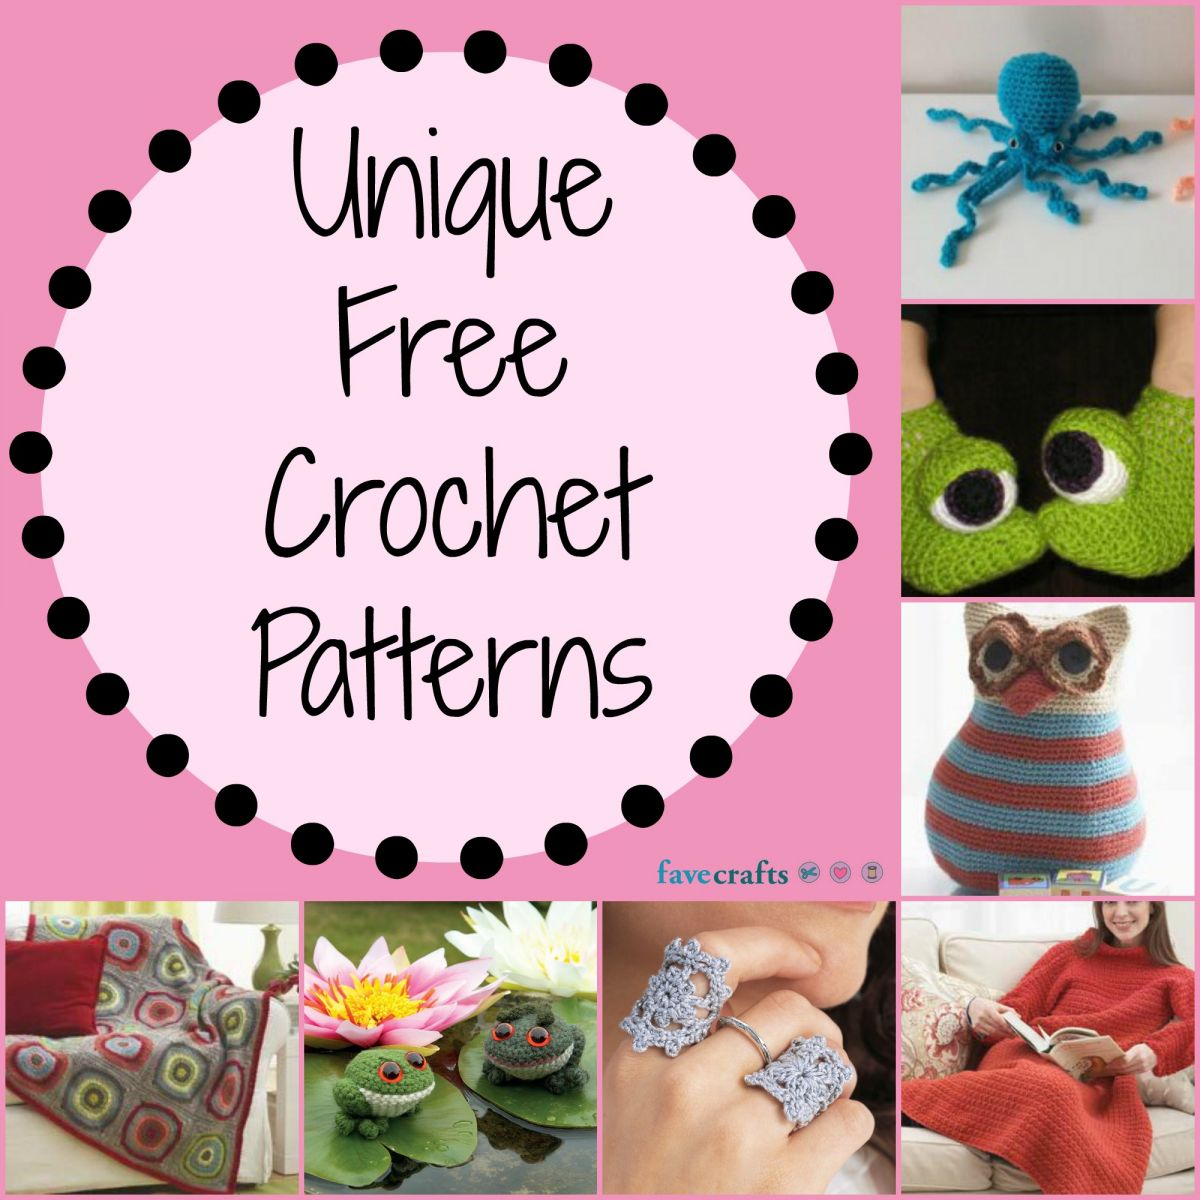 Unusual Crochet Patterns 17 Unique Free Crochet Patterns Favecrafts